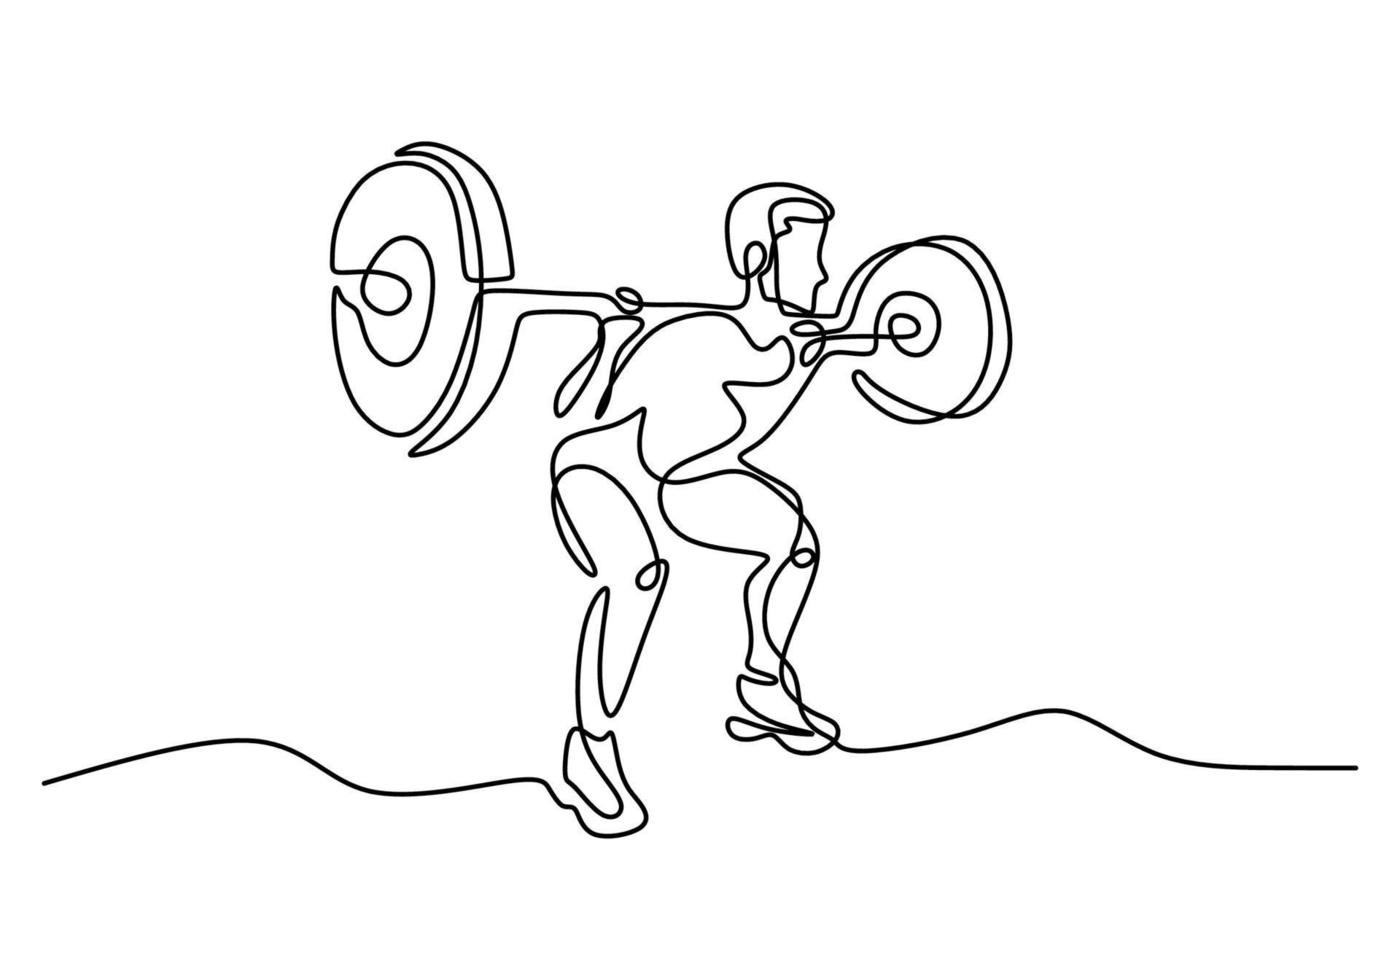 een enkele lijntekening van jonge sportieve man opleiding lift barbell op bankdrukken in sport gymnasium clubcentrum. fitness stretching concept geïsoleerd op een witte achtergrond. vector illustratie